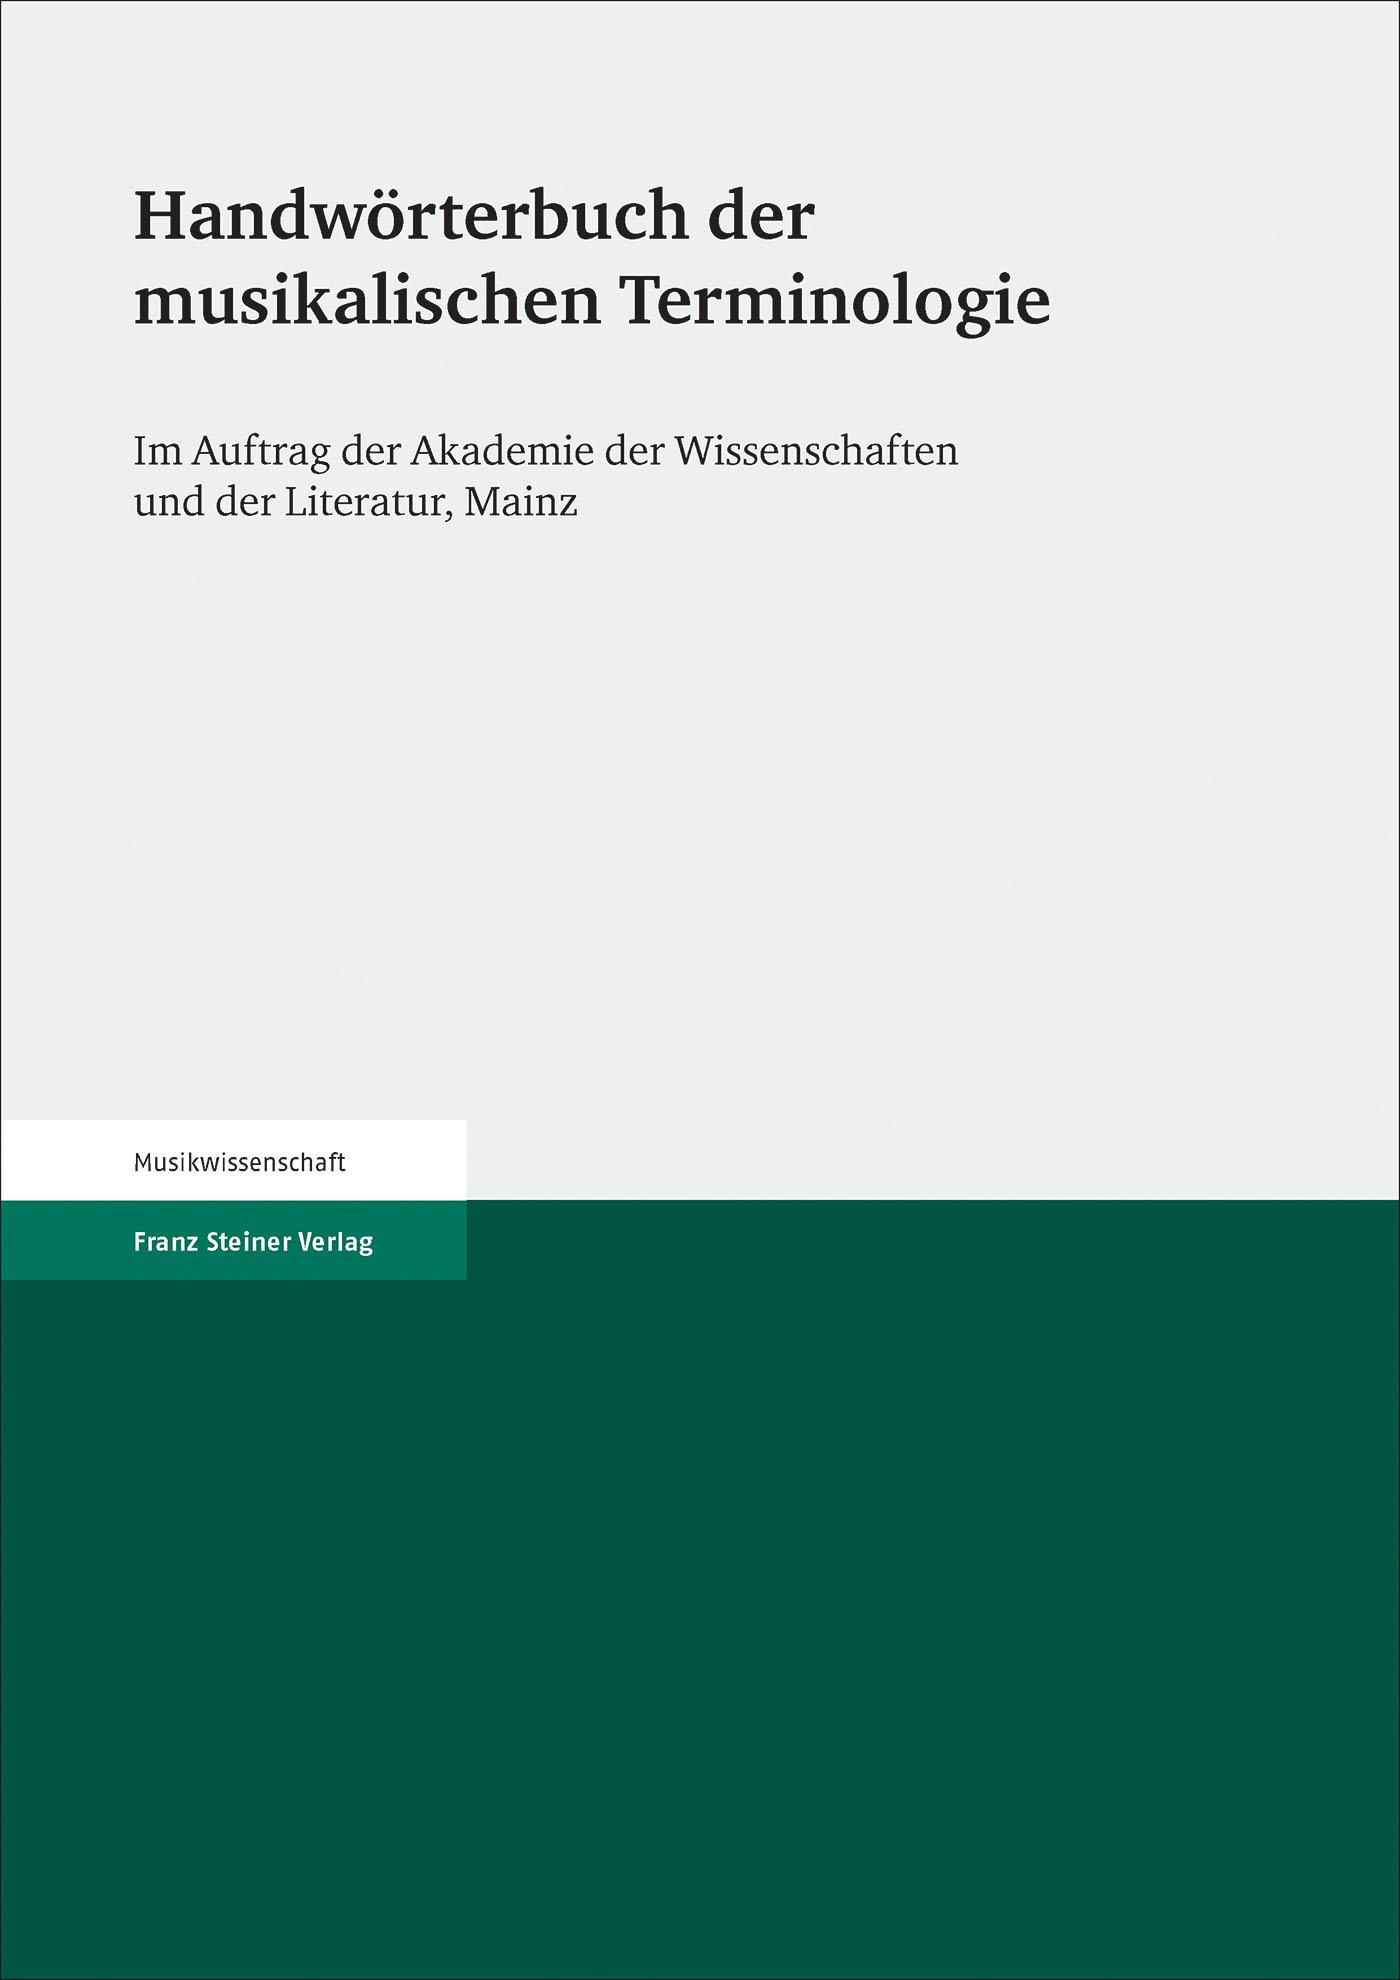 Handwörterbuch der musikalischen Terminologie. Lieferung 34